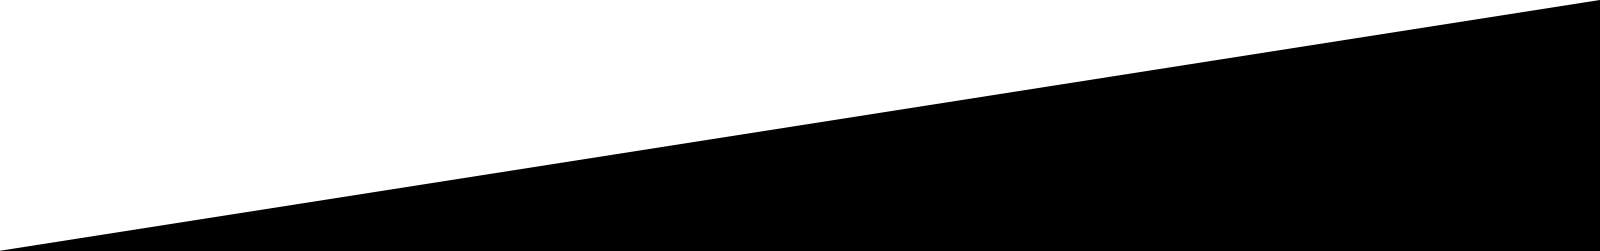 Diagonal linje mellom hvitt område og svart område for designformål